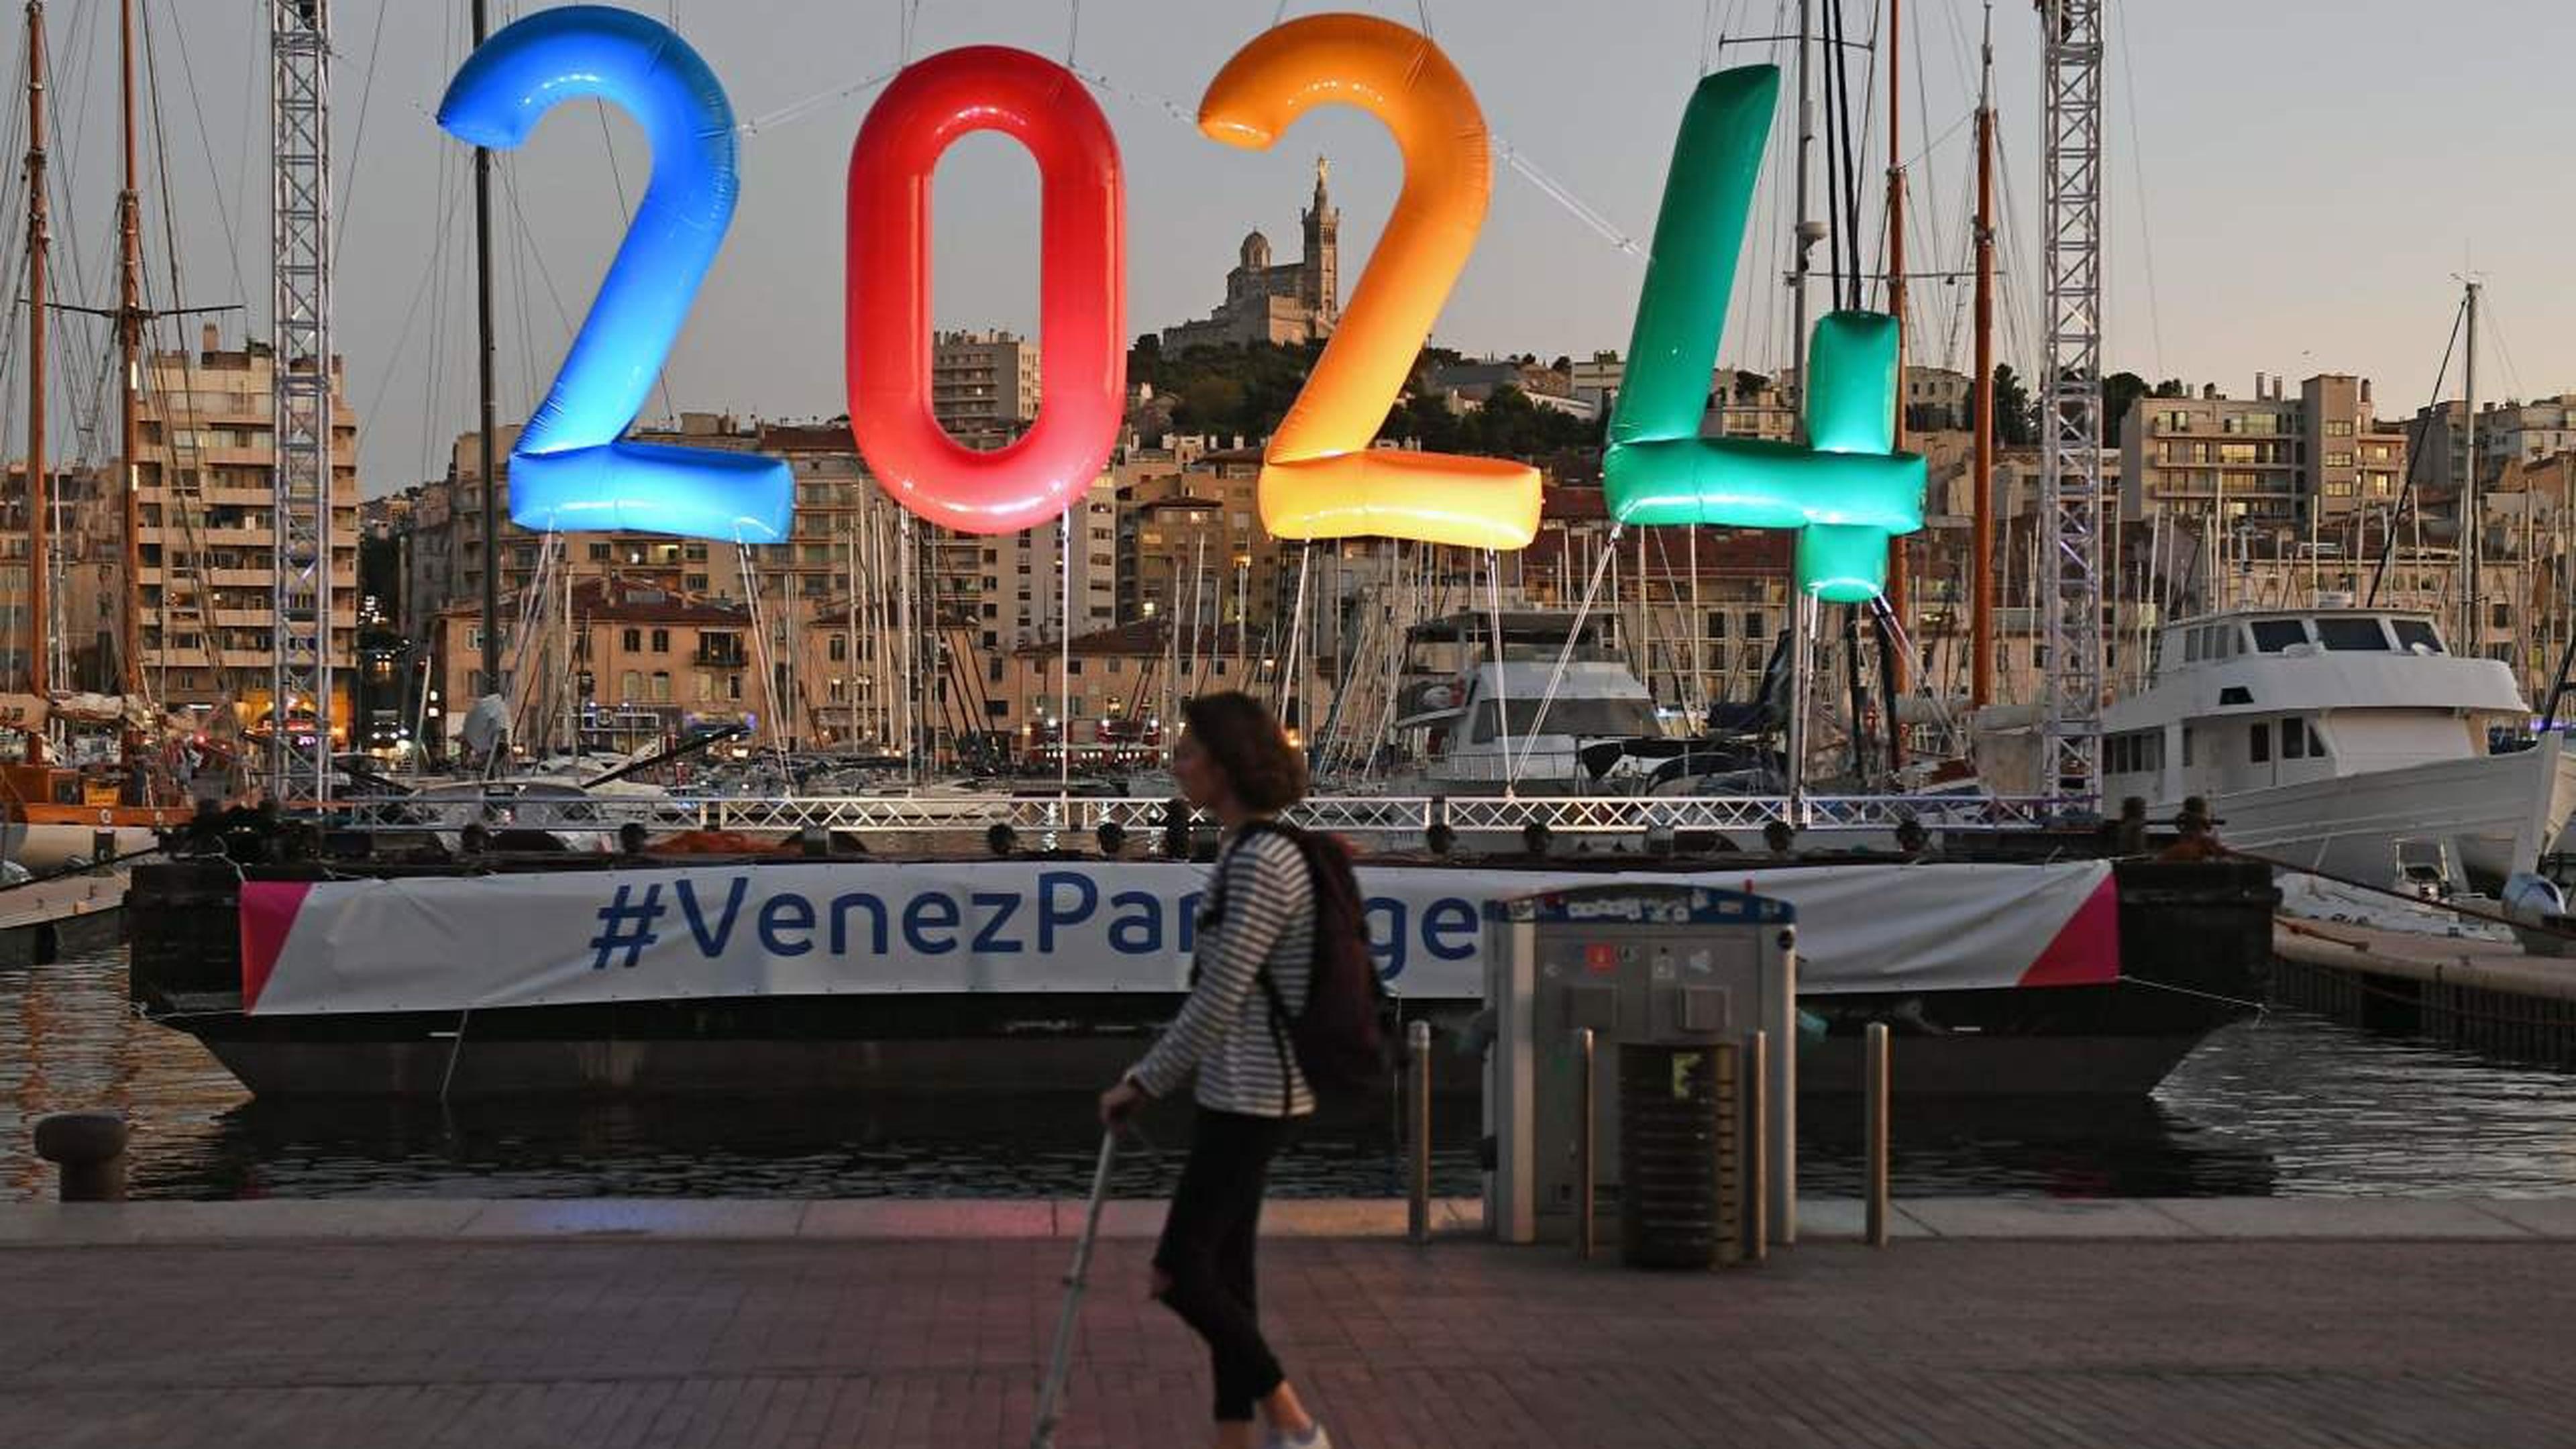 Jogos Olímpicos de Paris: o que mudou em 100 anos?